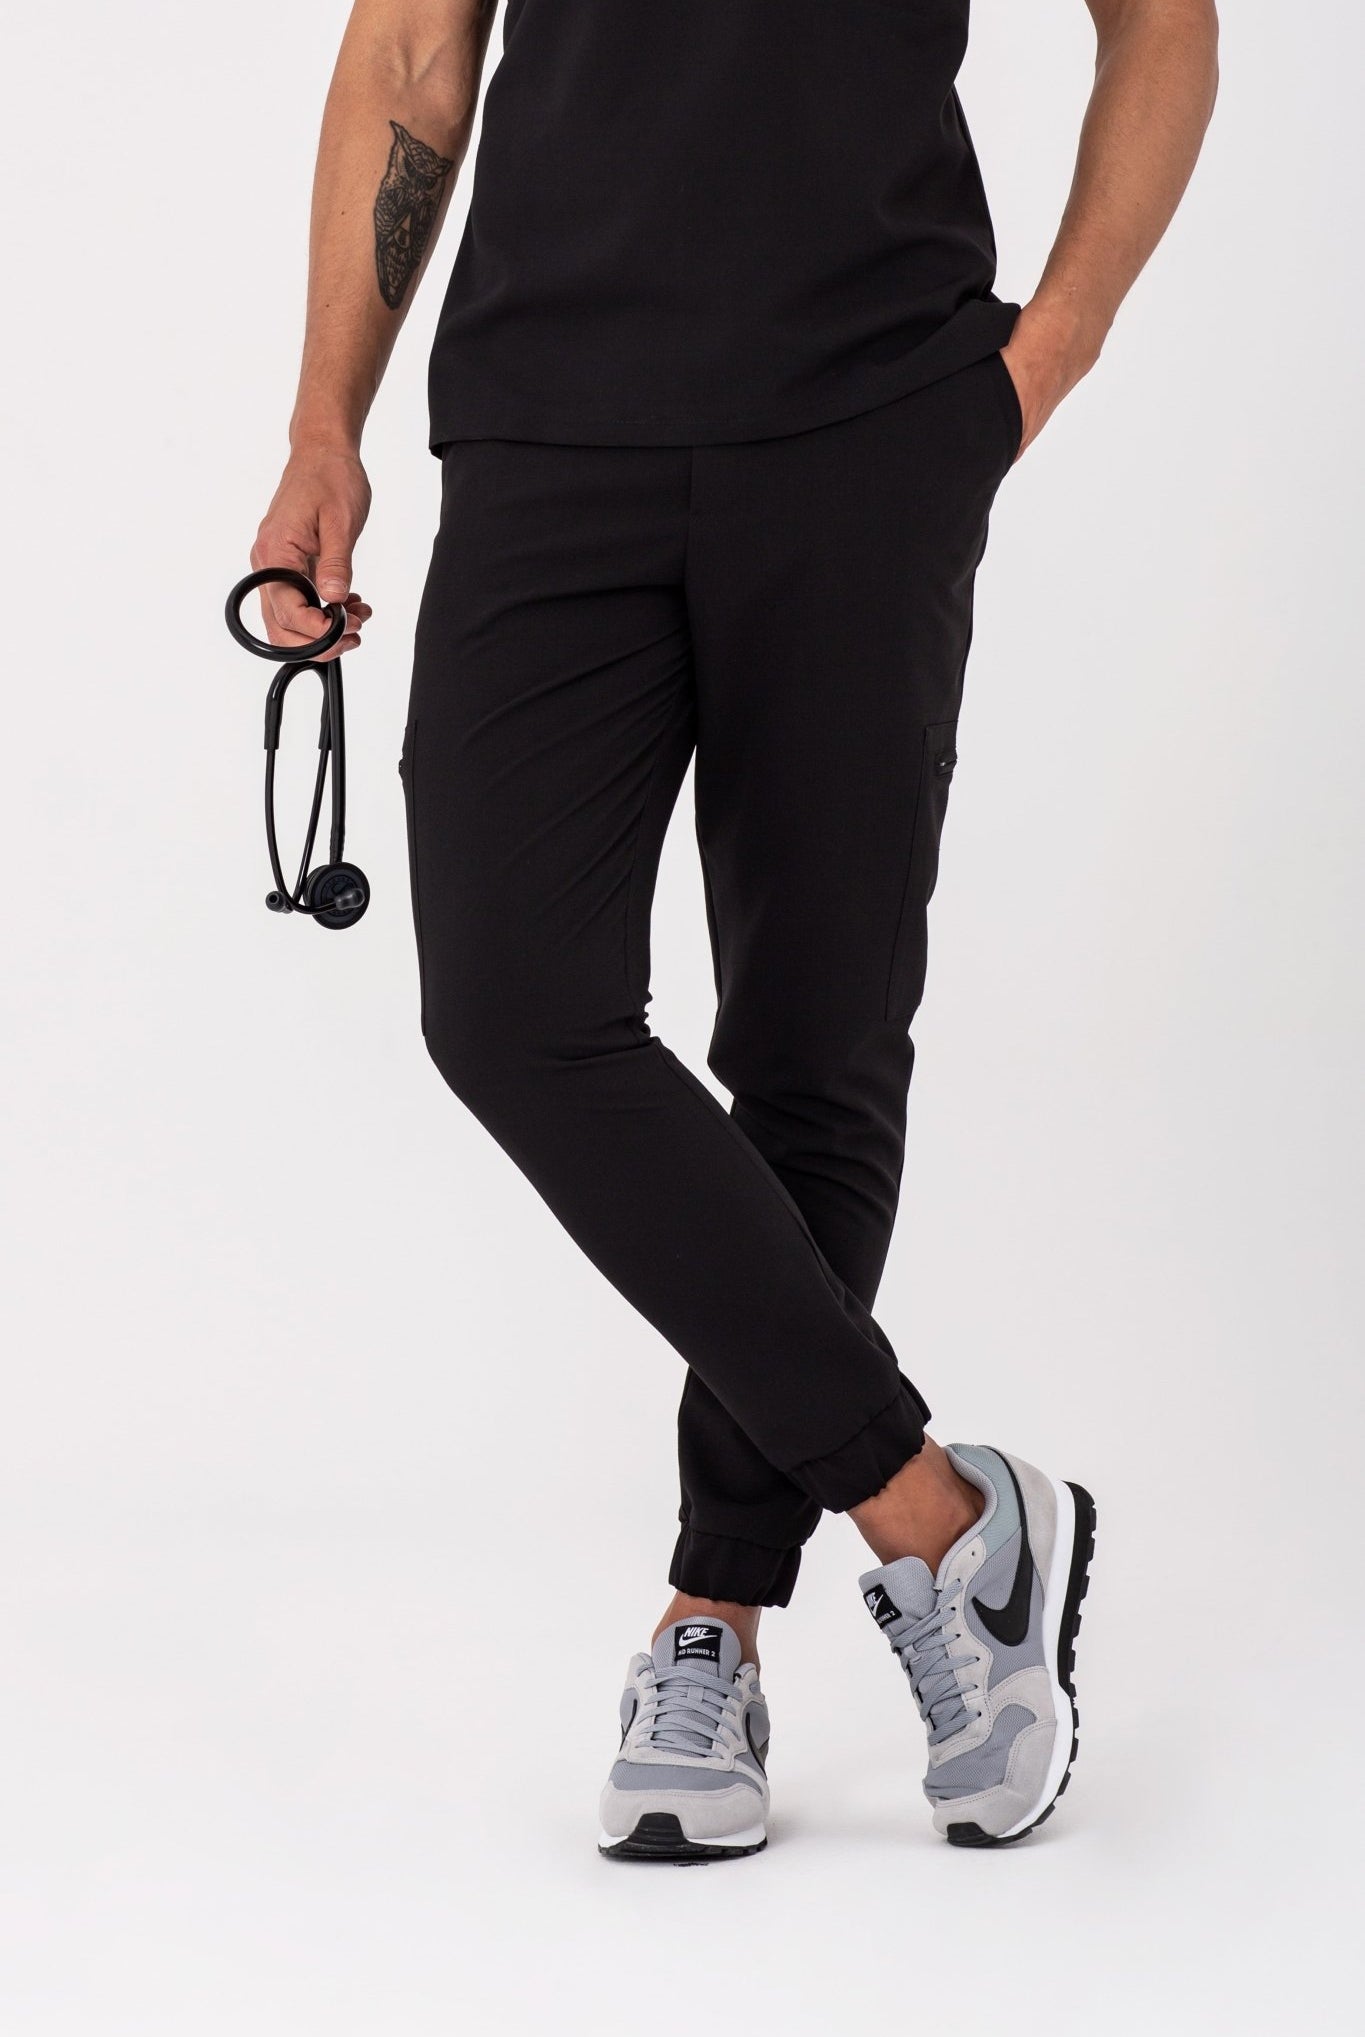 Spodnie medyczne męskie Pace - kolor czarny